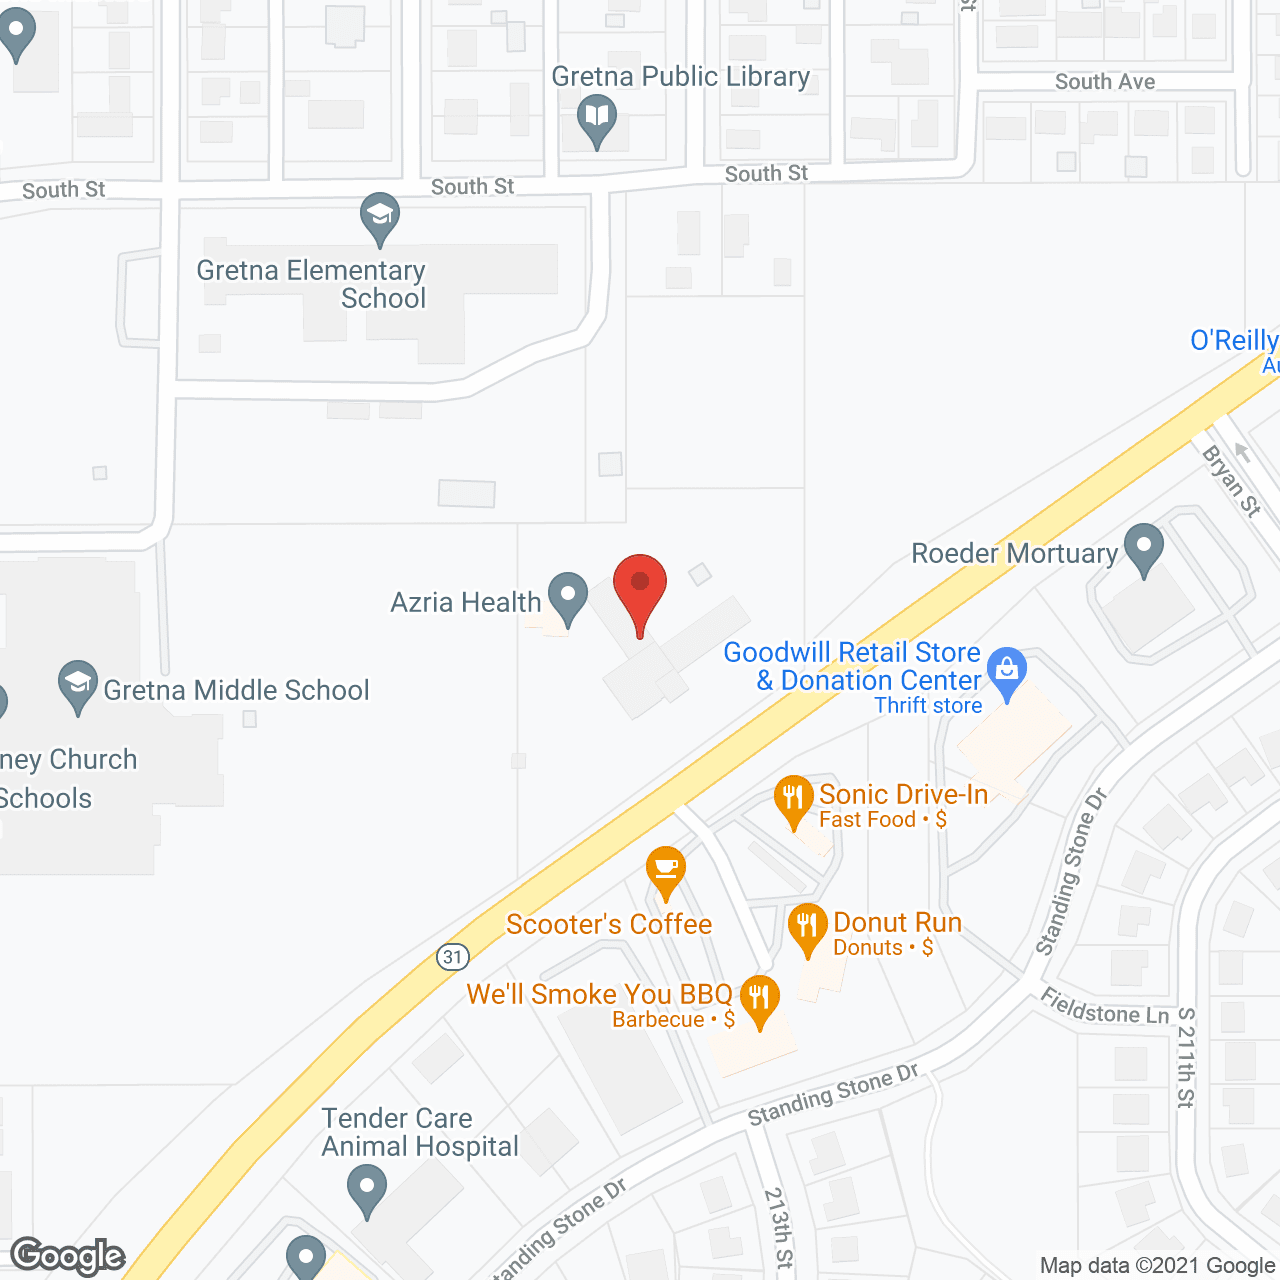 Gretna Community Living Center in google map